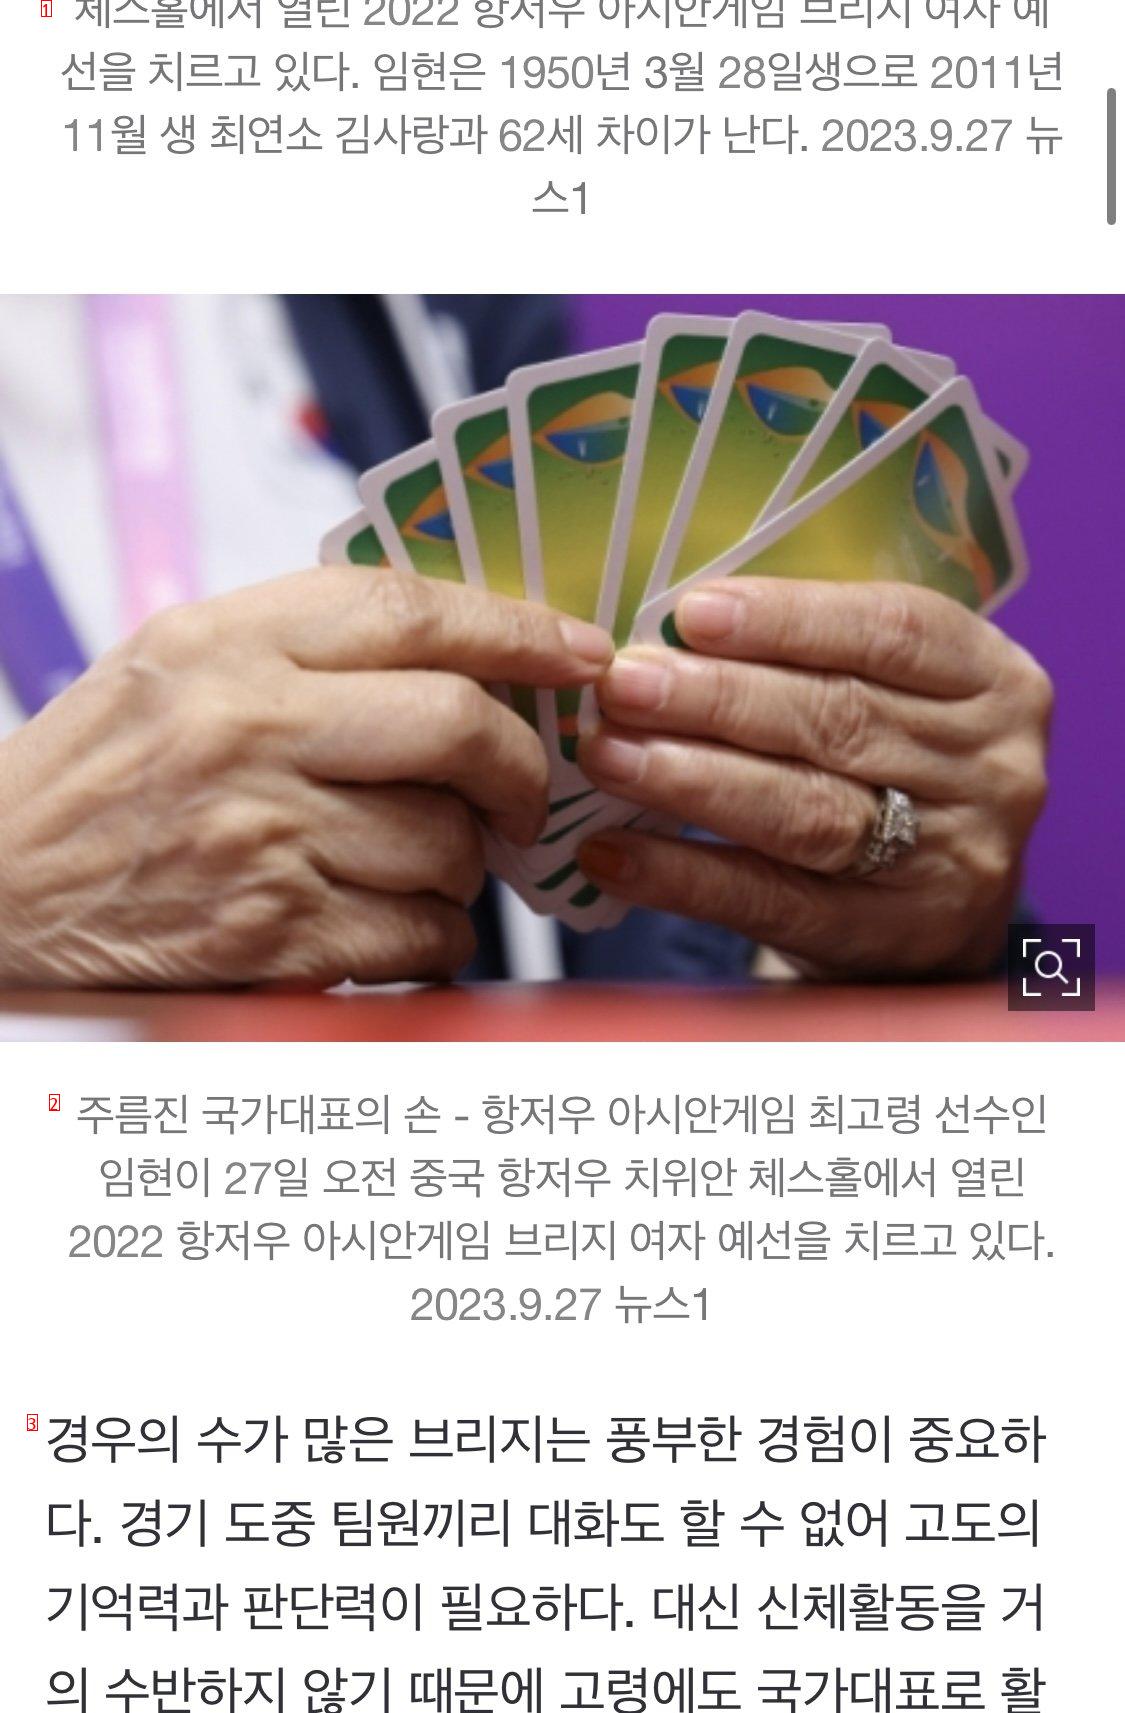 73살 최고령 국가대표 “아시안게임 출격”